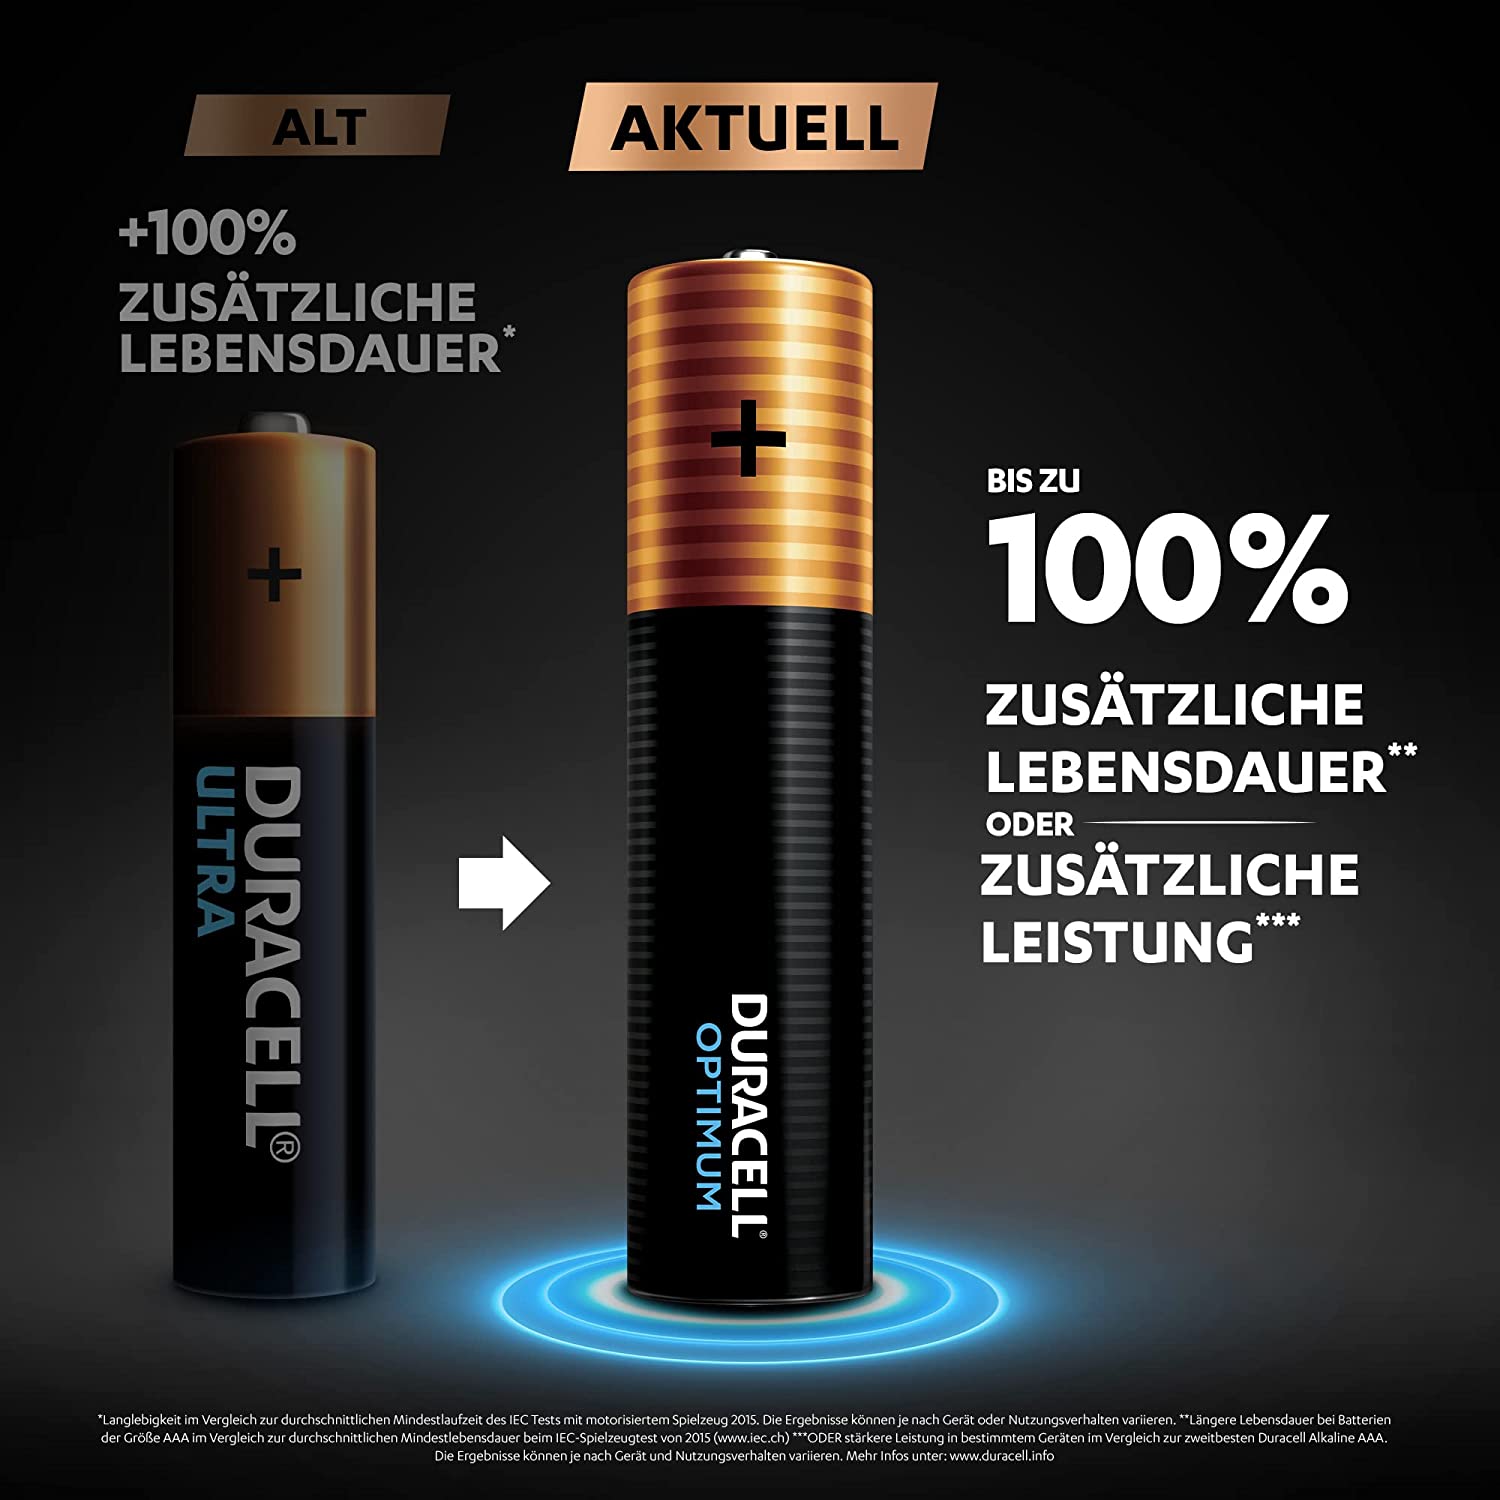 Duracell Optimum LR03, 1.5 V Batterie, Micro, AAA, MX2400 MINI Stilo Micro, 8er